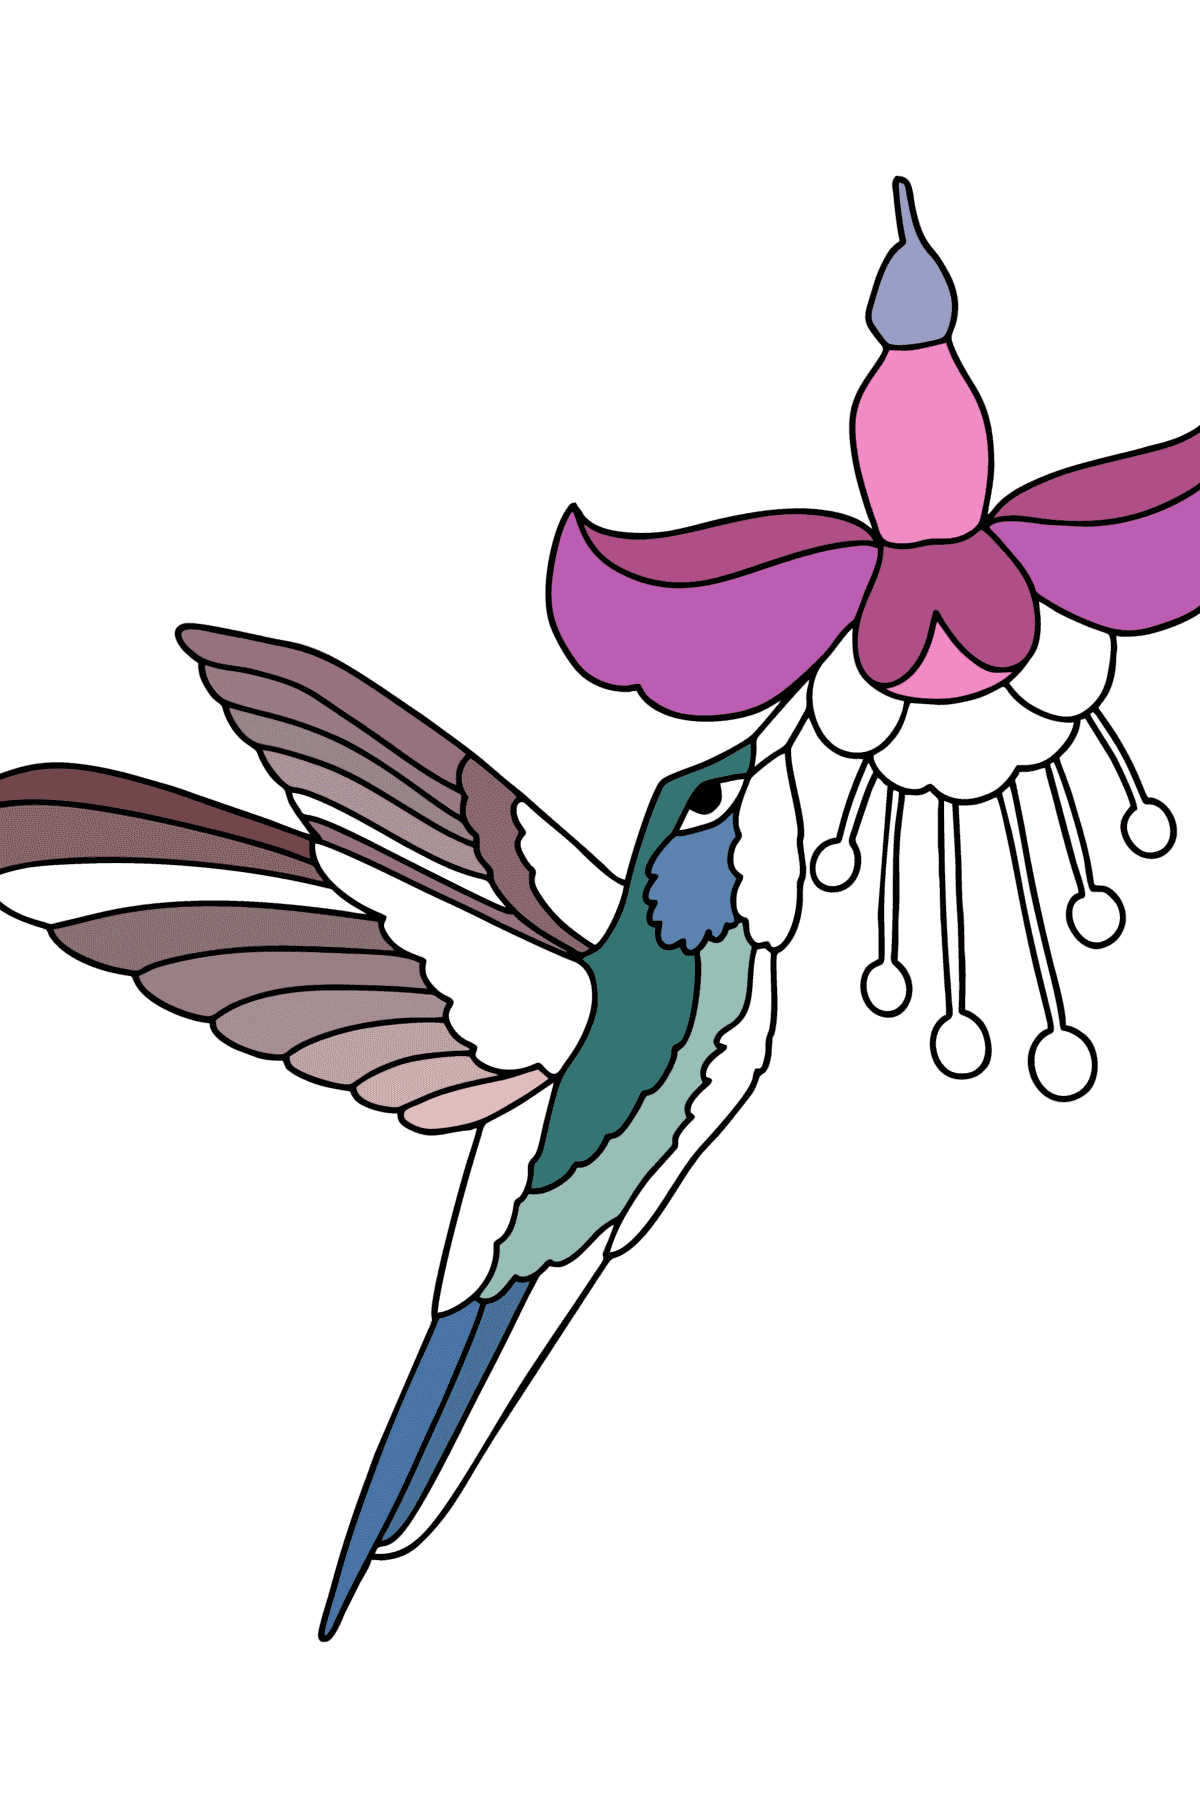 Disegno da colorare Giungla di colibrì - Disegni da colorare per bambini